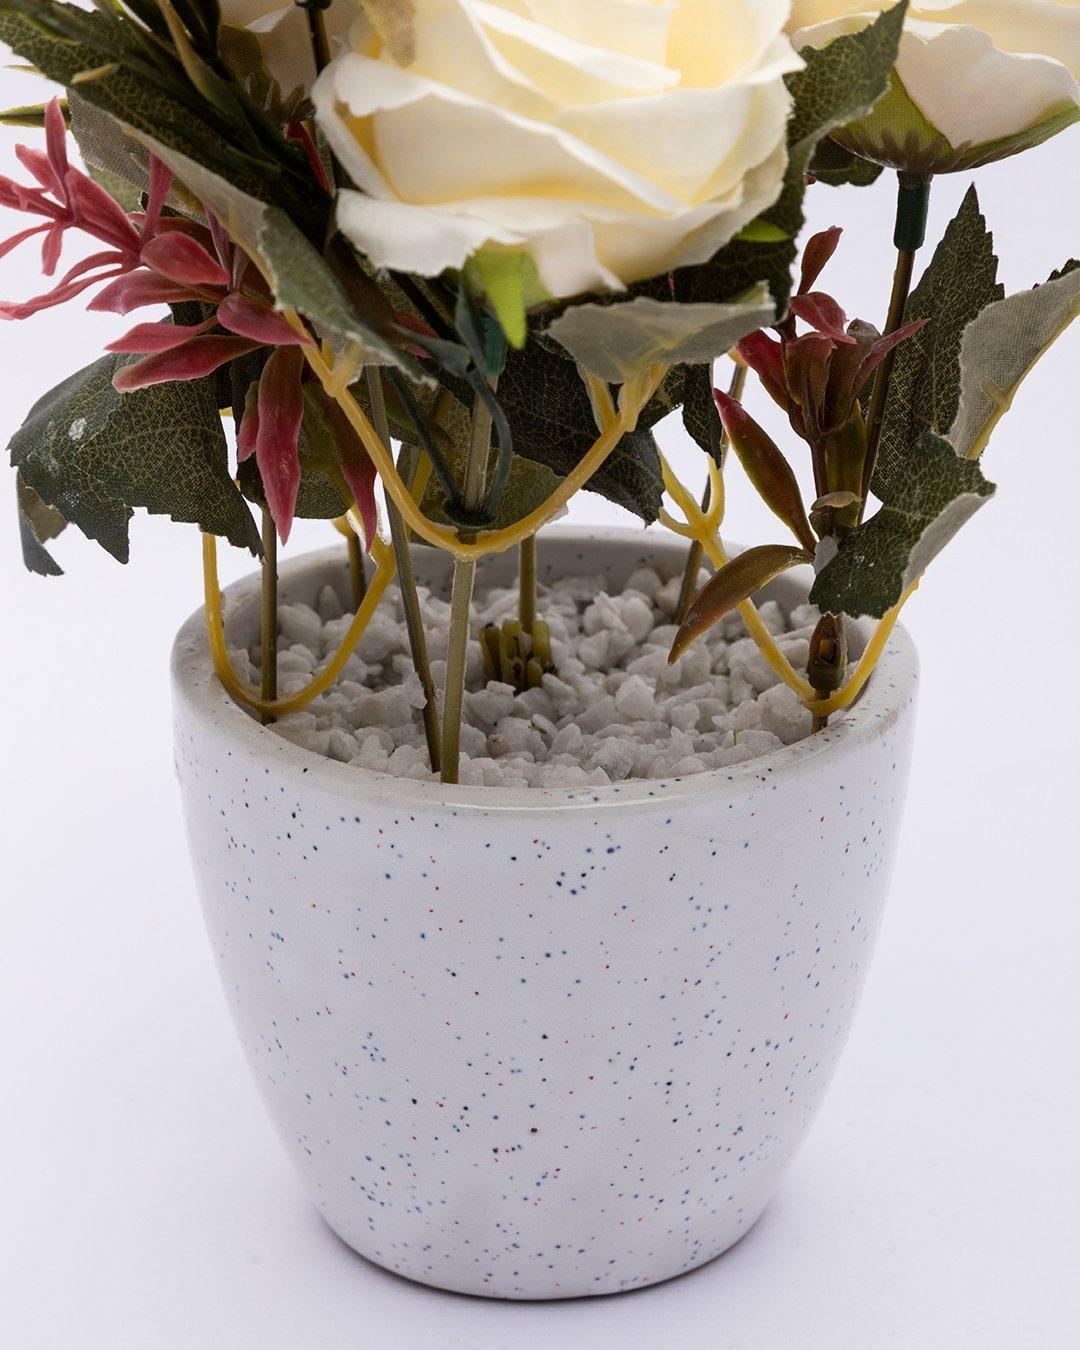 Artificial Plant with Ceramic Pot, Rose Arrangement, White, Plastic Plant - MARKET 99